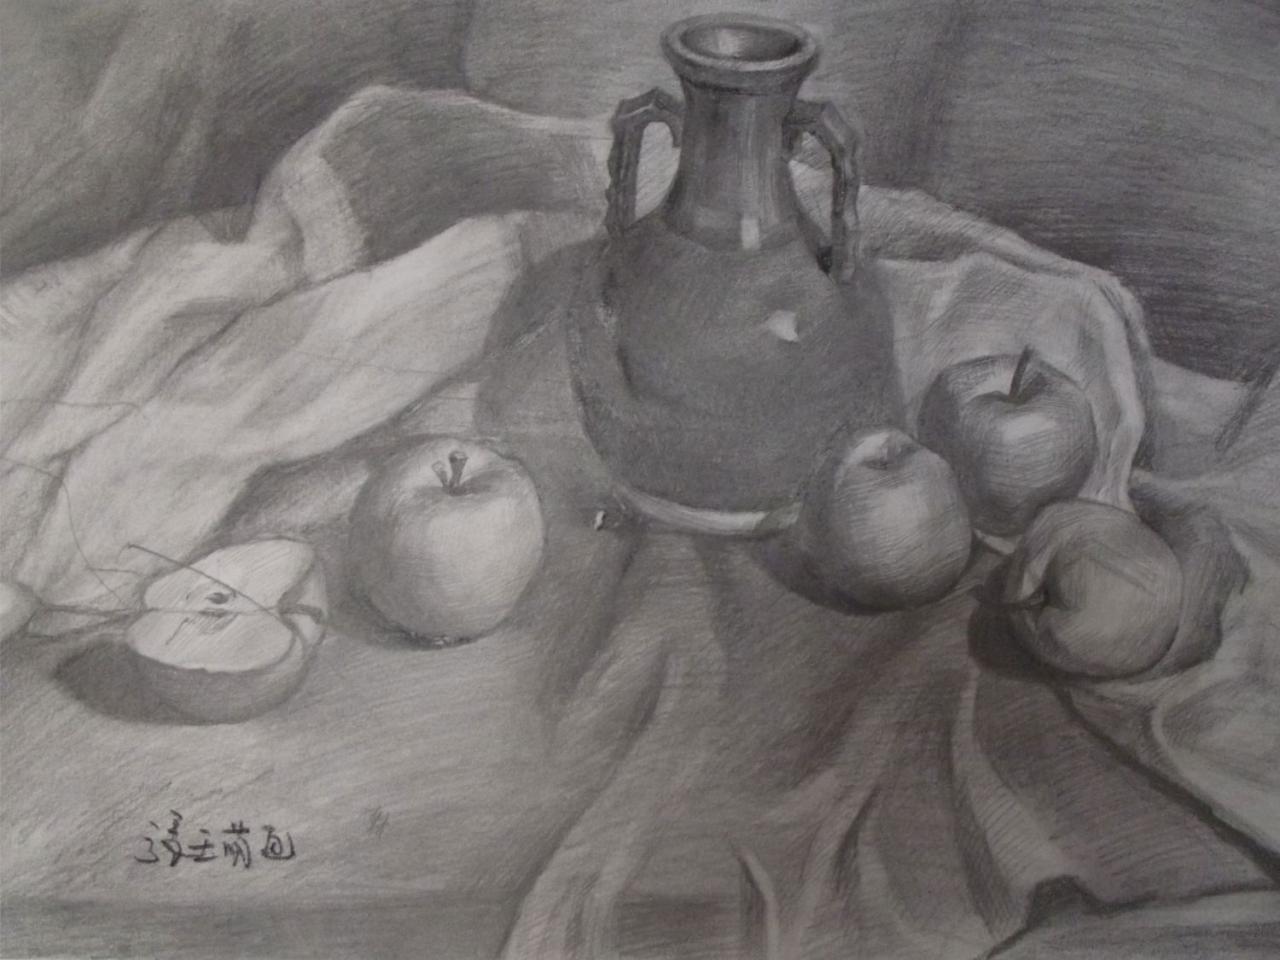 花瓶、苹果、衬布 静物素描 张亚萌画